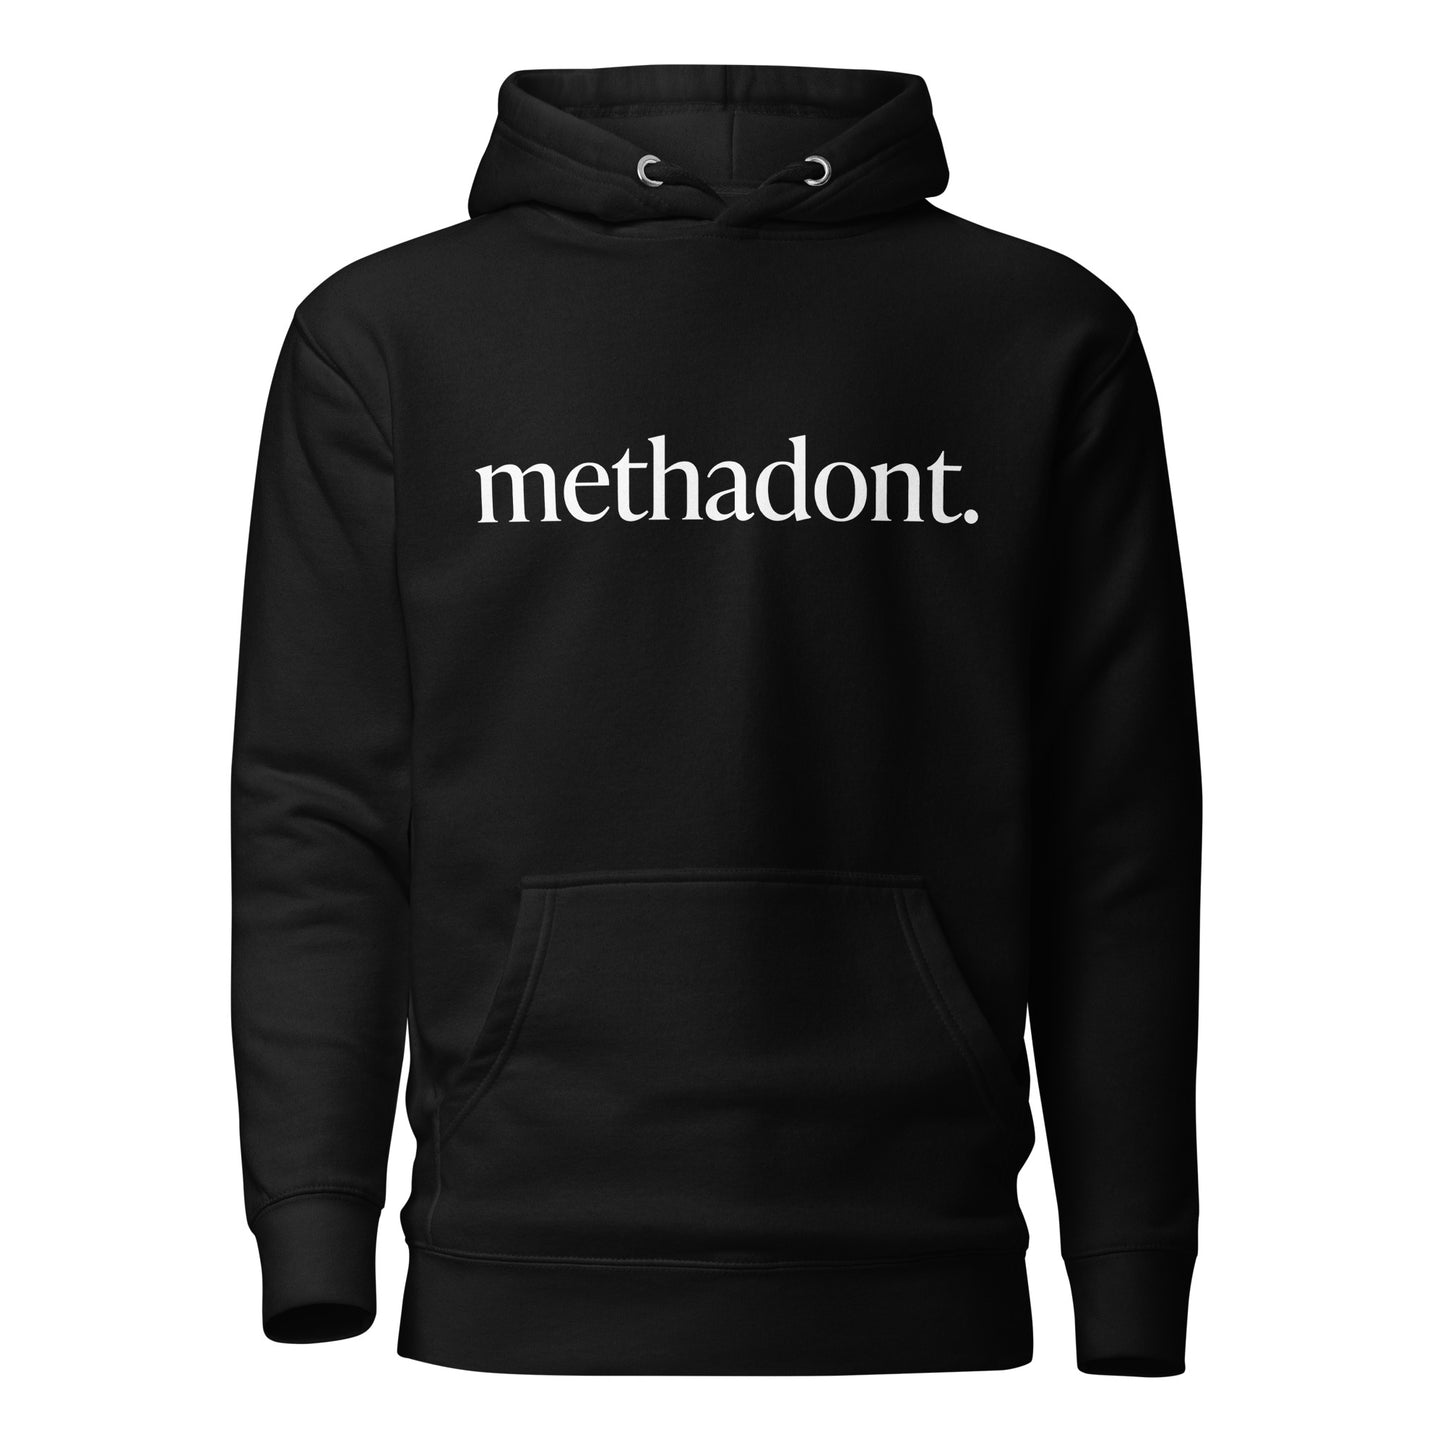 methadont heavyweight hoodie